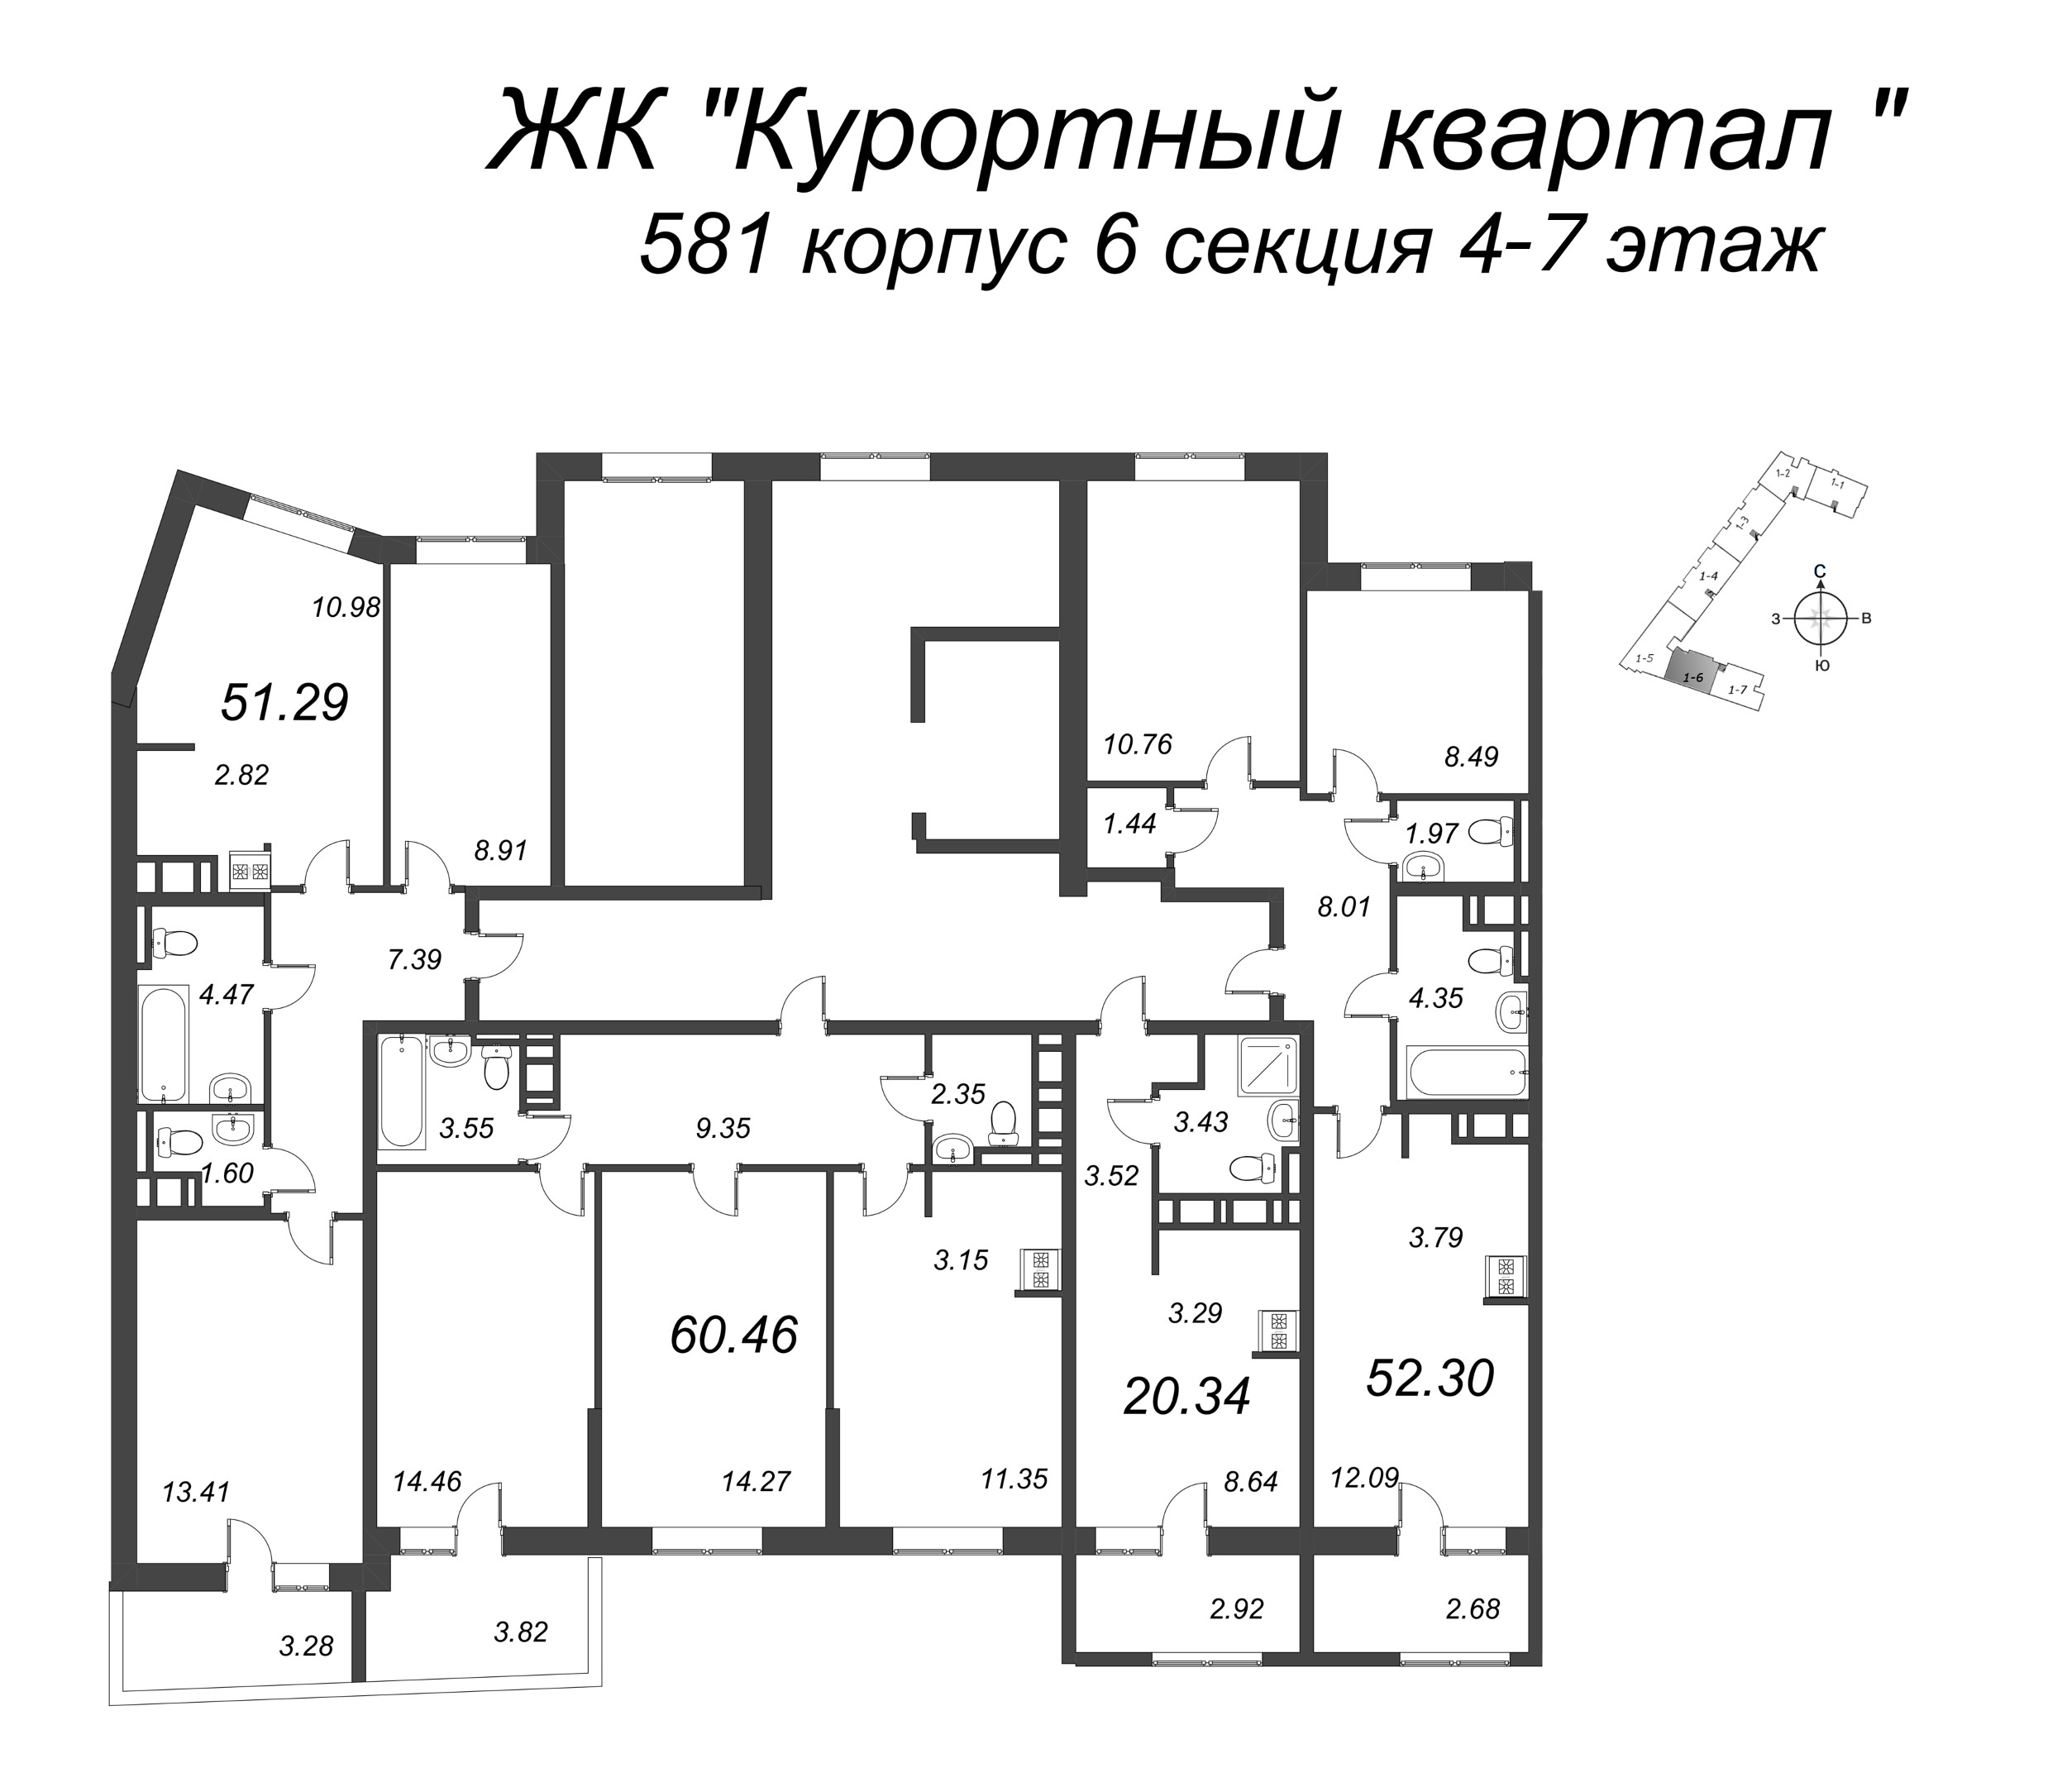 Квартира-студия, 20.34 м² в ЖК "Курортный Квартал" - планировка этажа